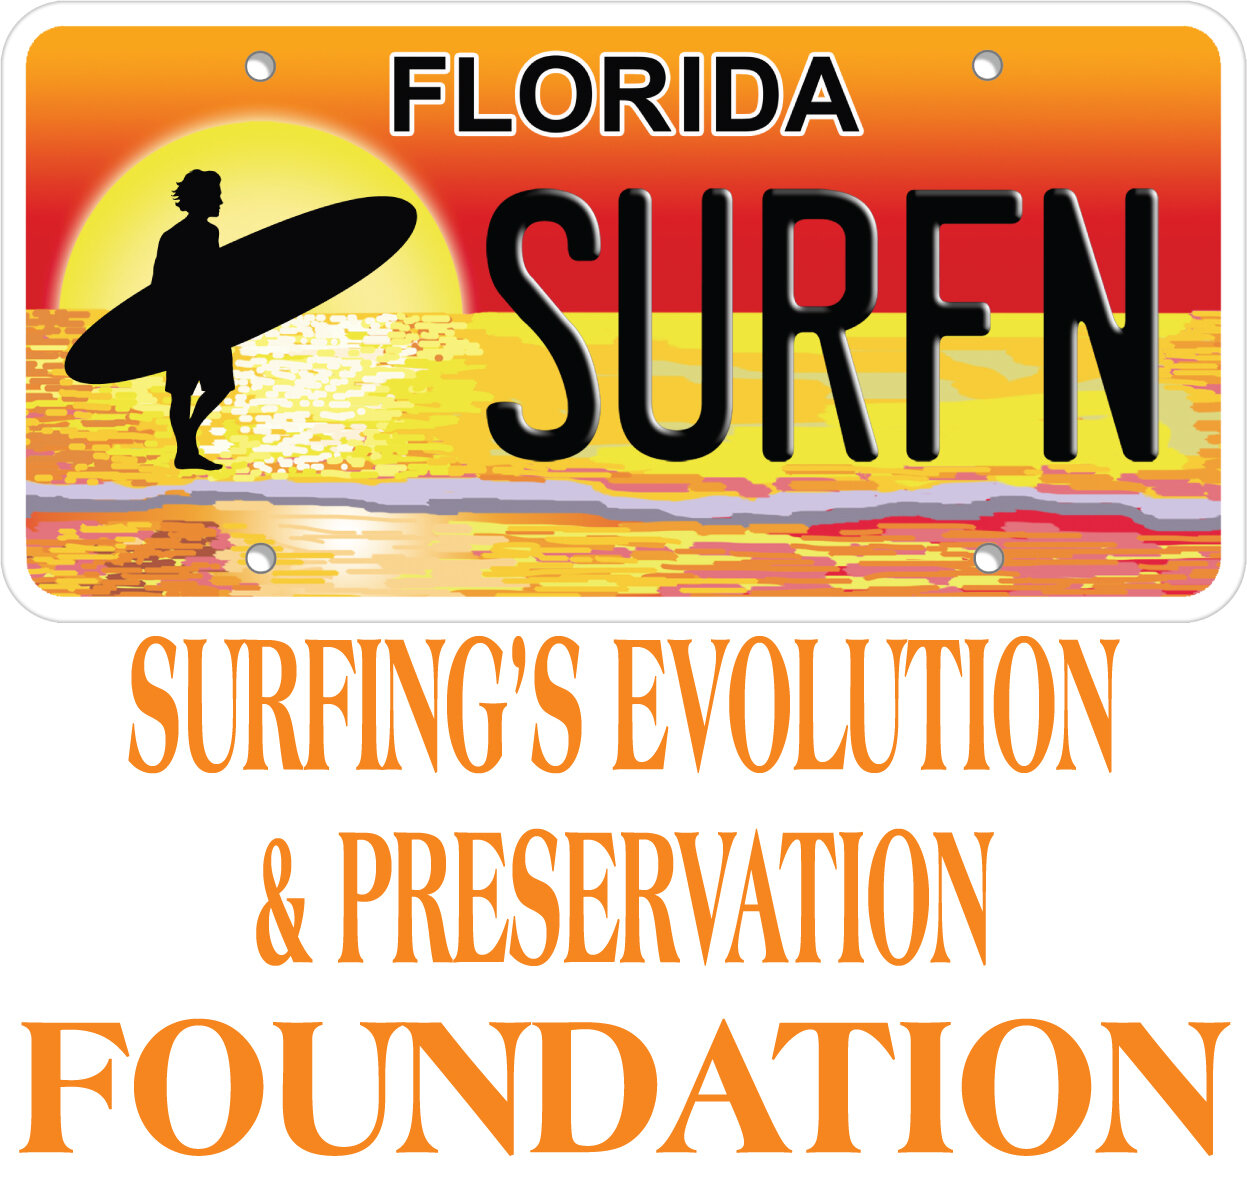 Surfing's Evolution &amp; Preservation Foundation